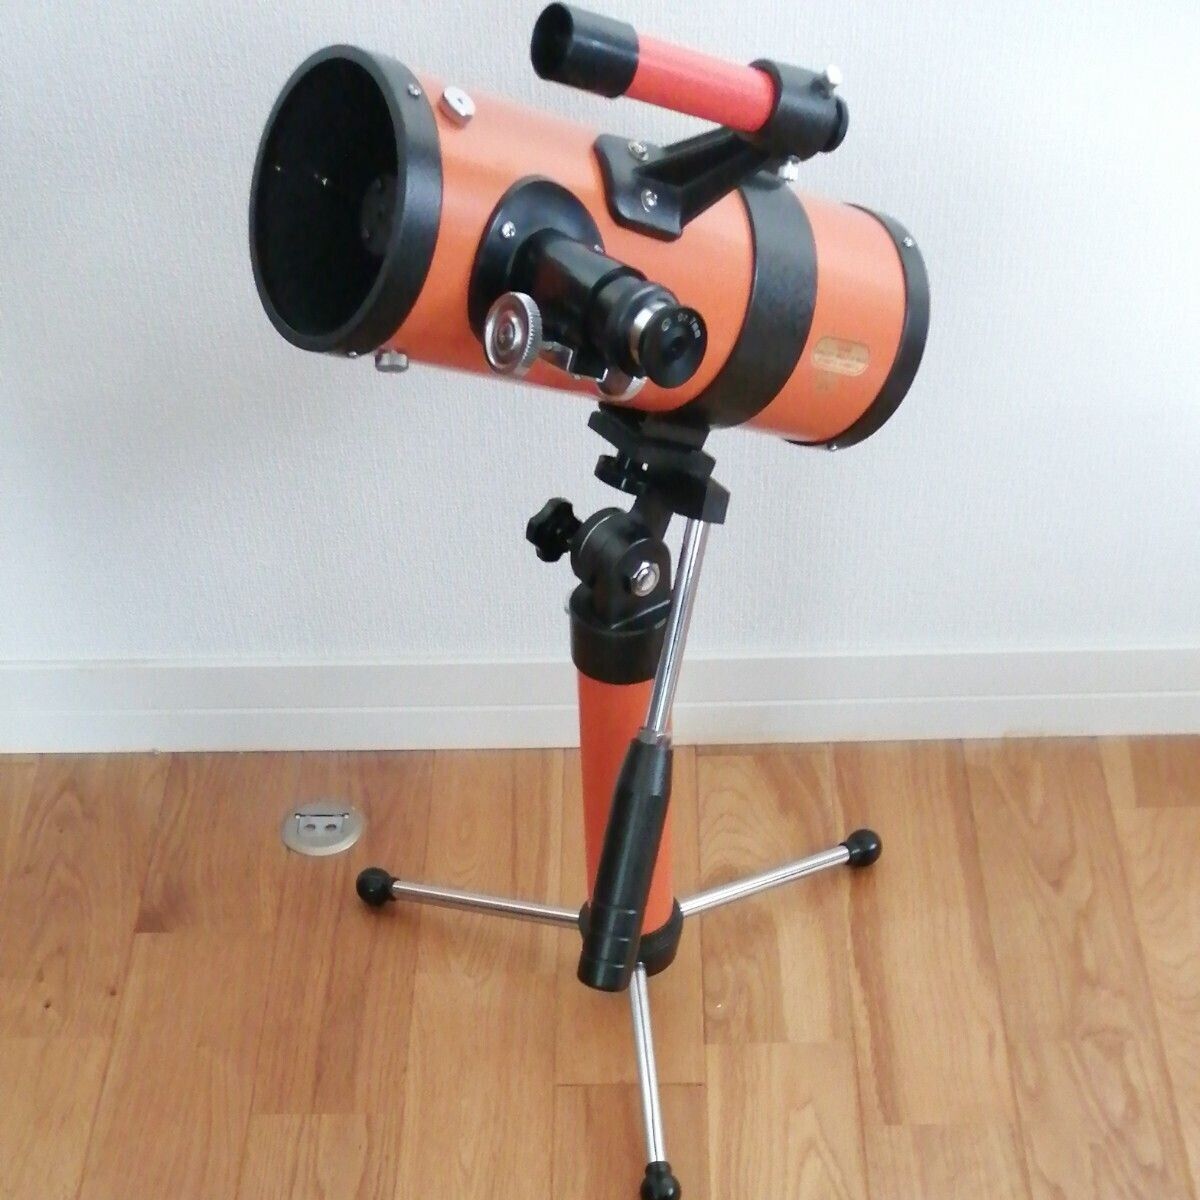 Vixen R80-S Short Focus Tabletop Reflector Telescope Good condition